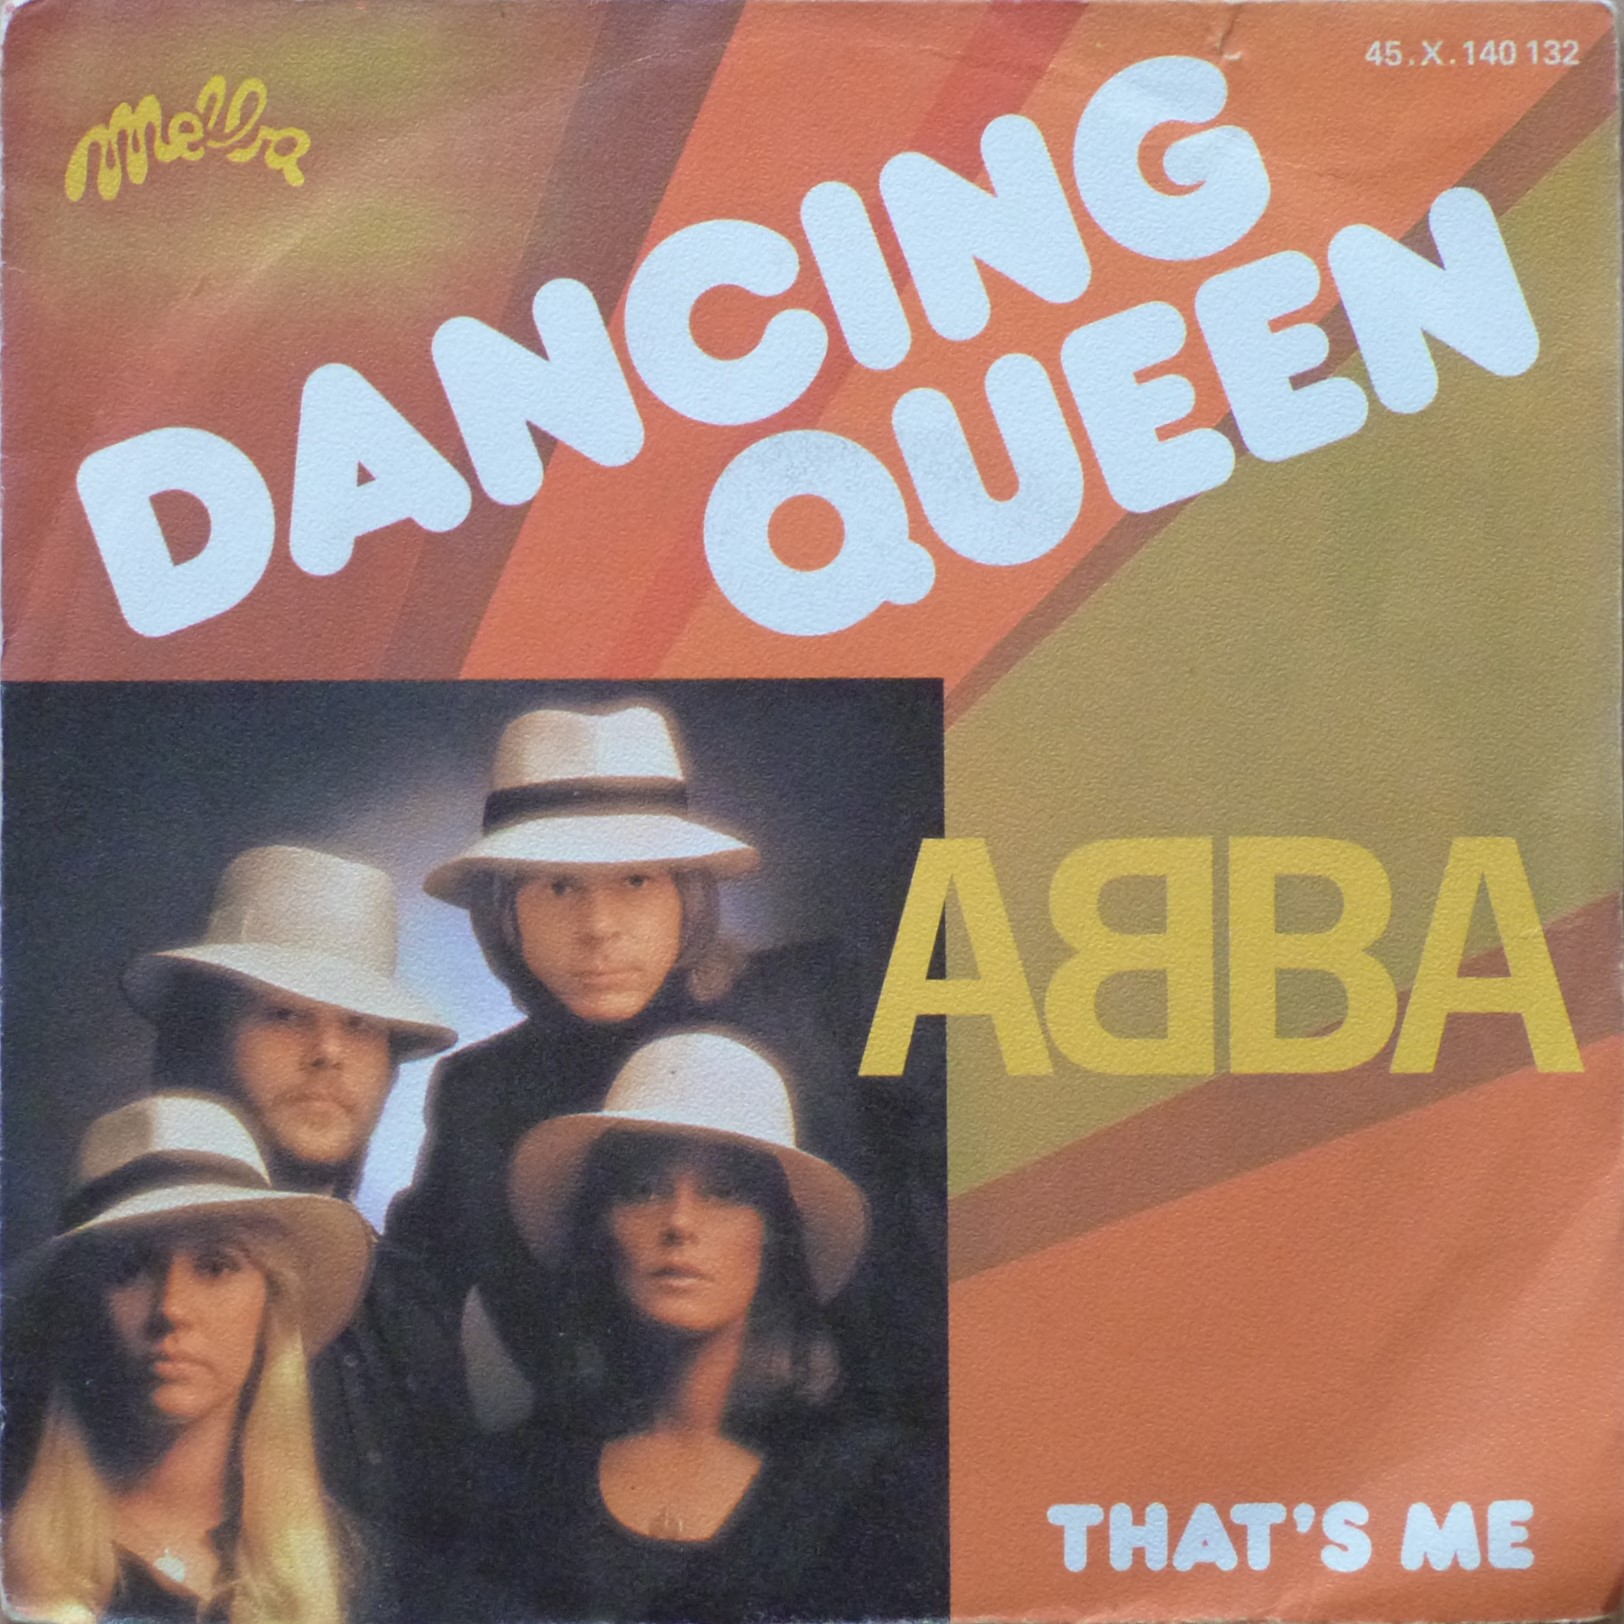 Abba Dancing queen